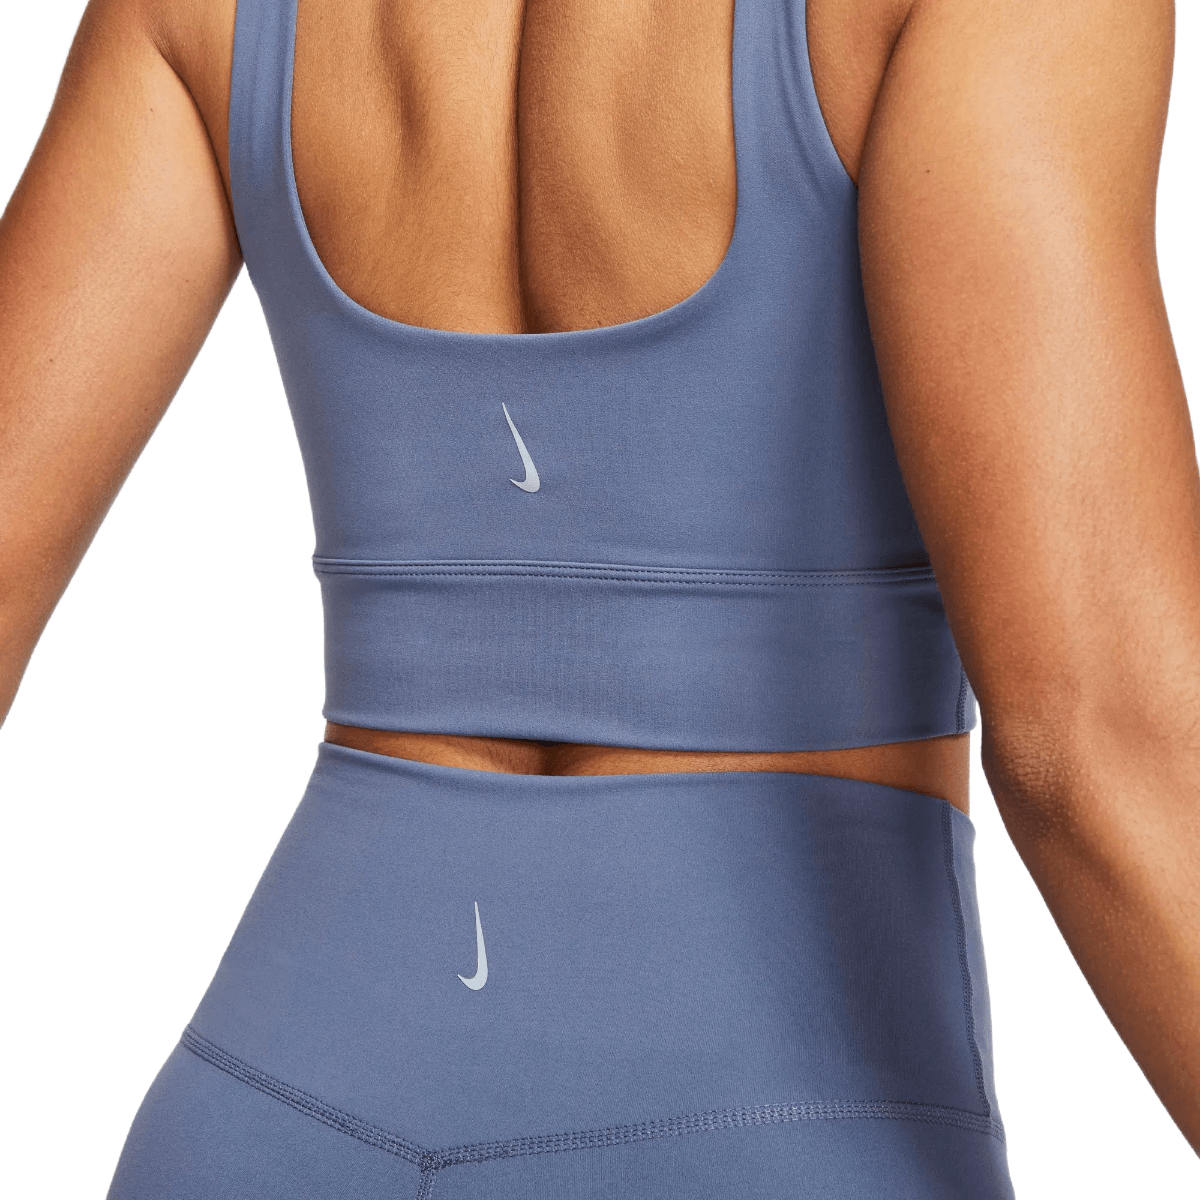 Nike Women's Yoga Dri-FIT Luxe Shelf-Bra Cropped Tank Top in Blue